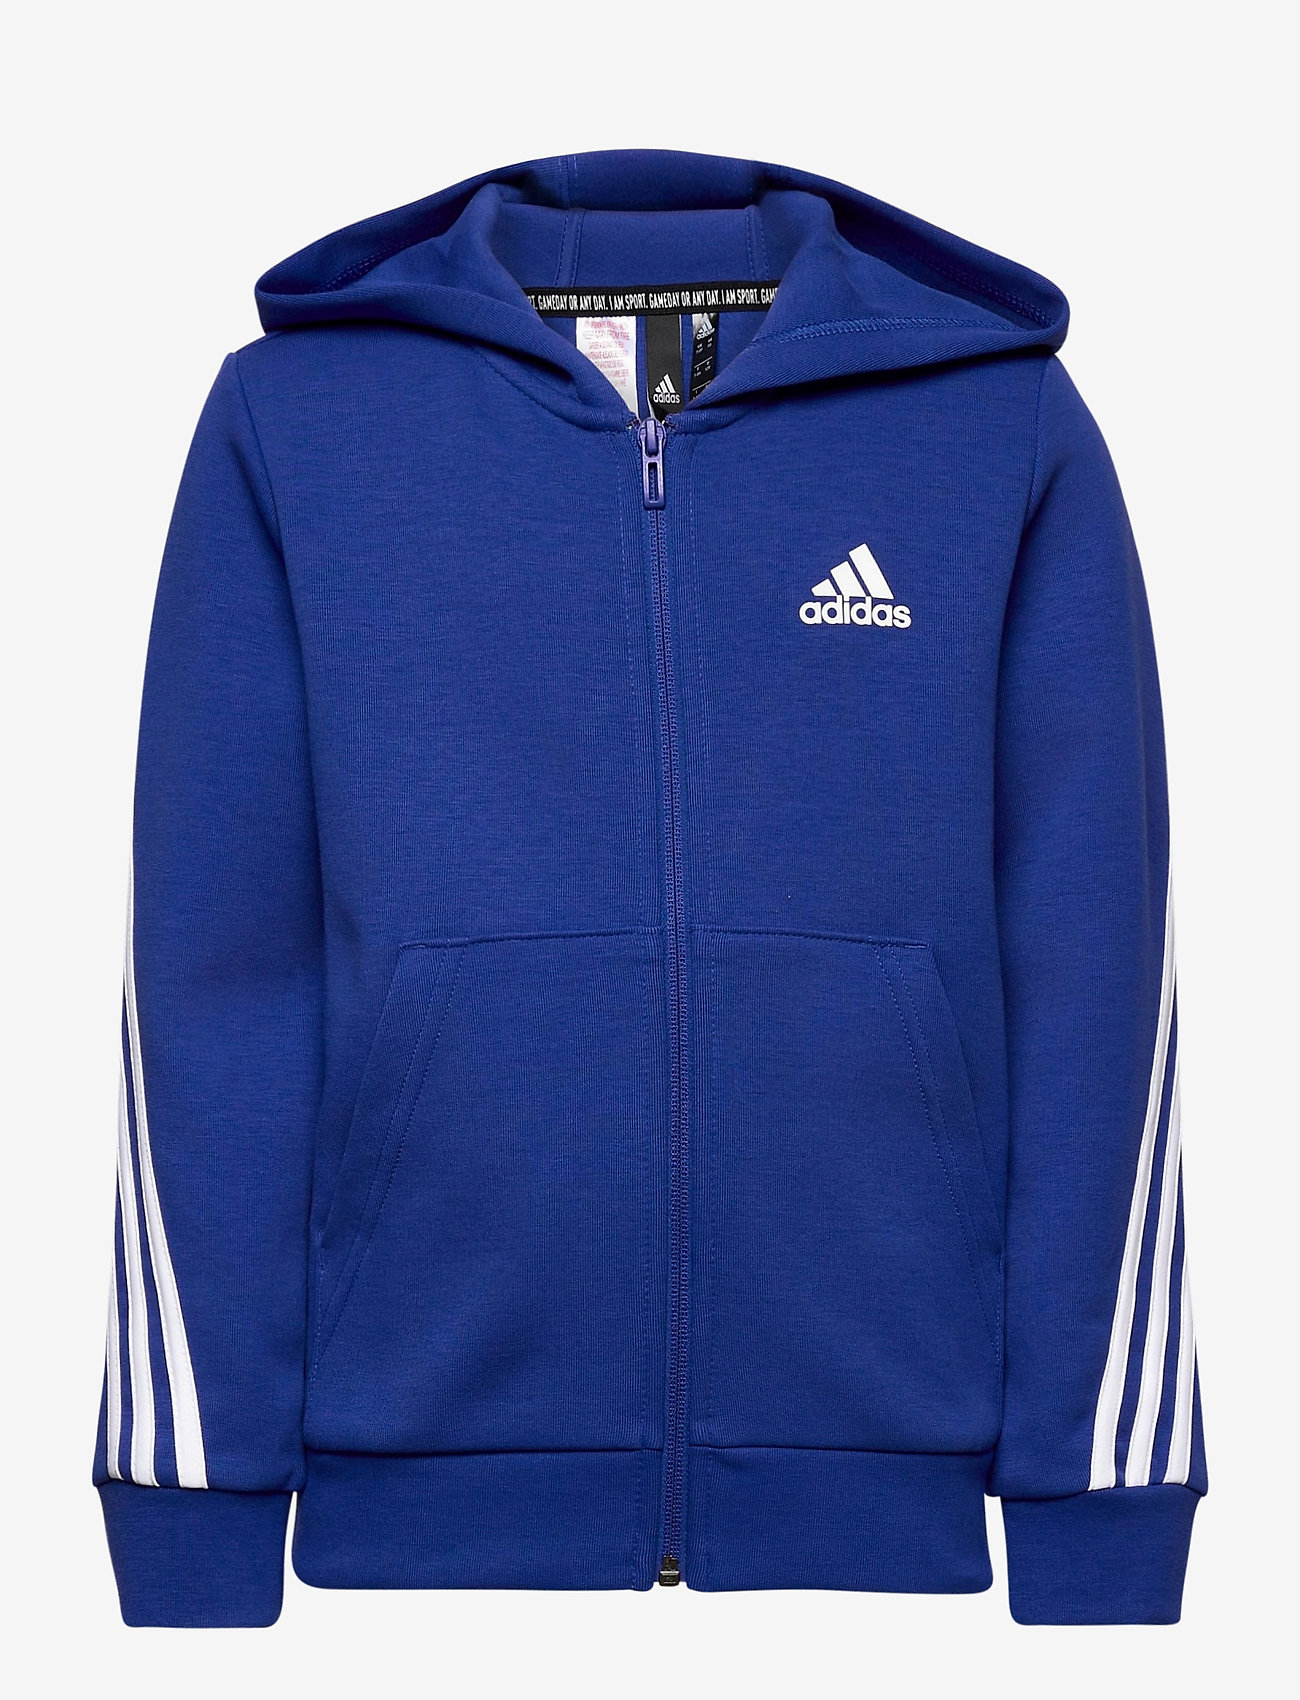 adidas 3 stripes zip hoodie